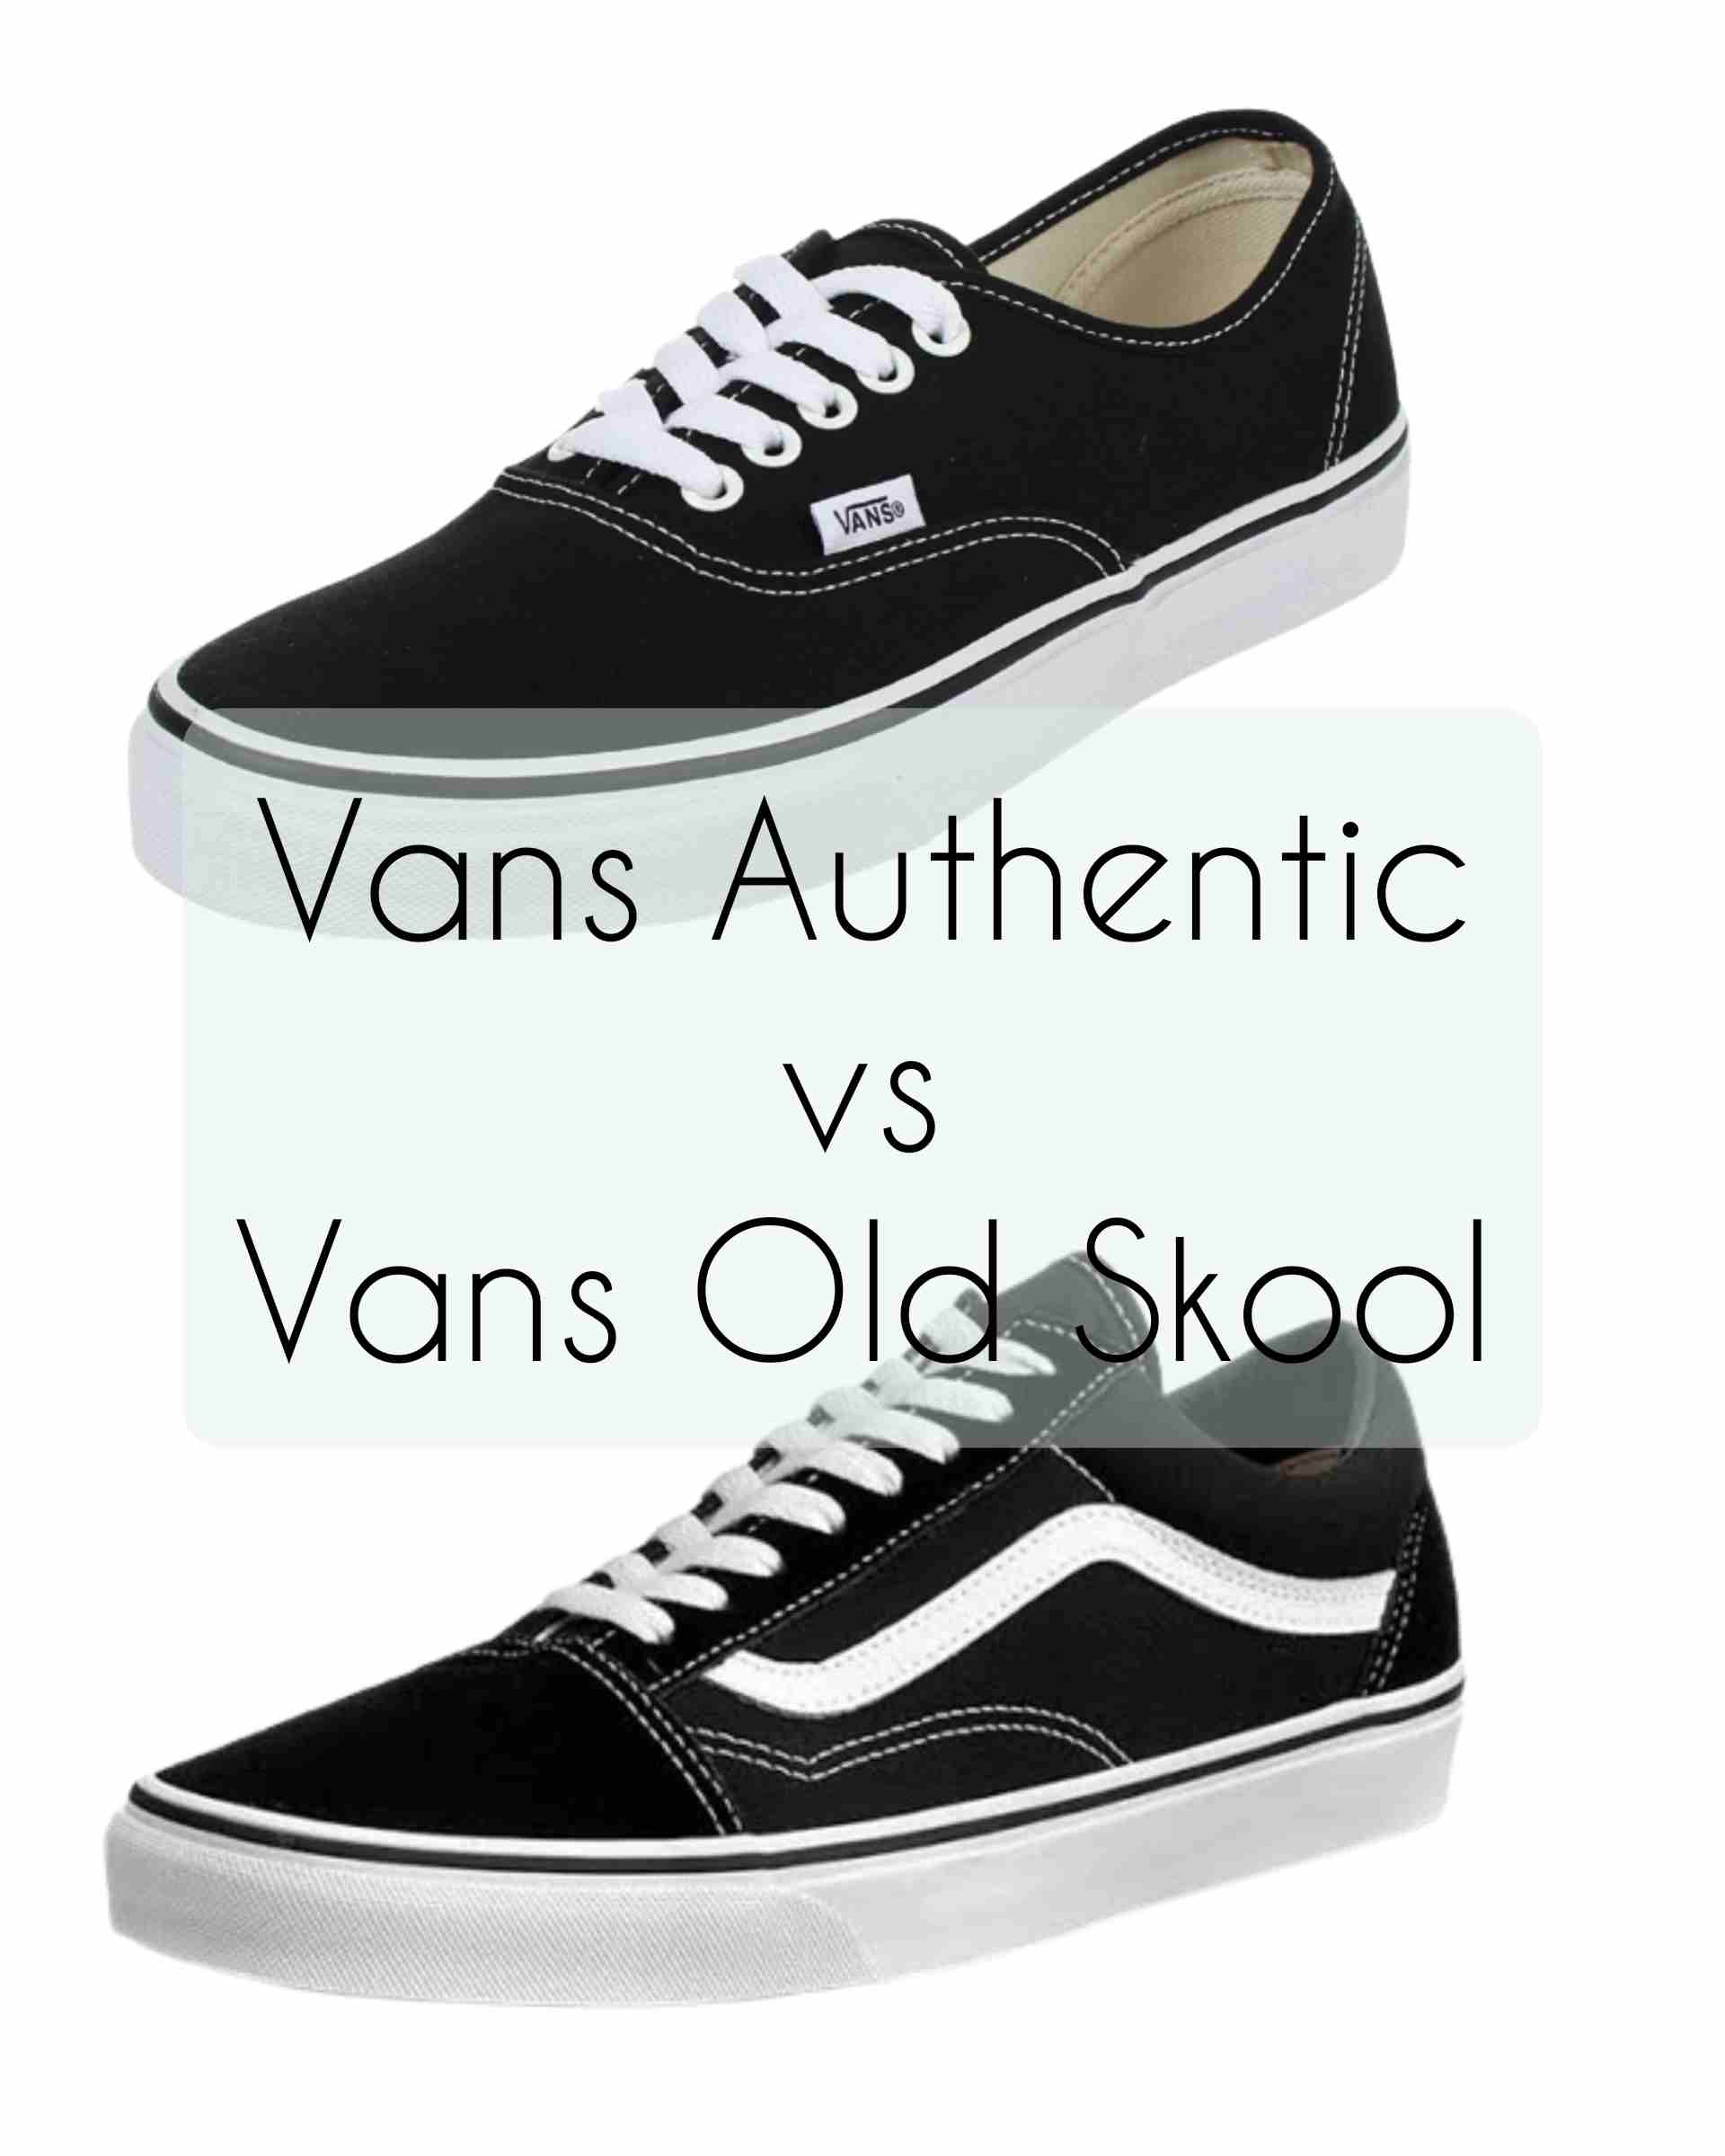 Vans Authentic Vans Old Skool: Which Better?